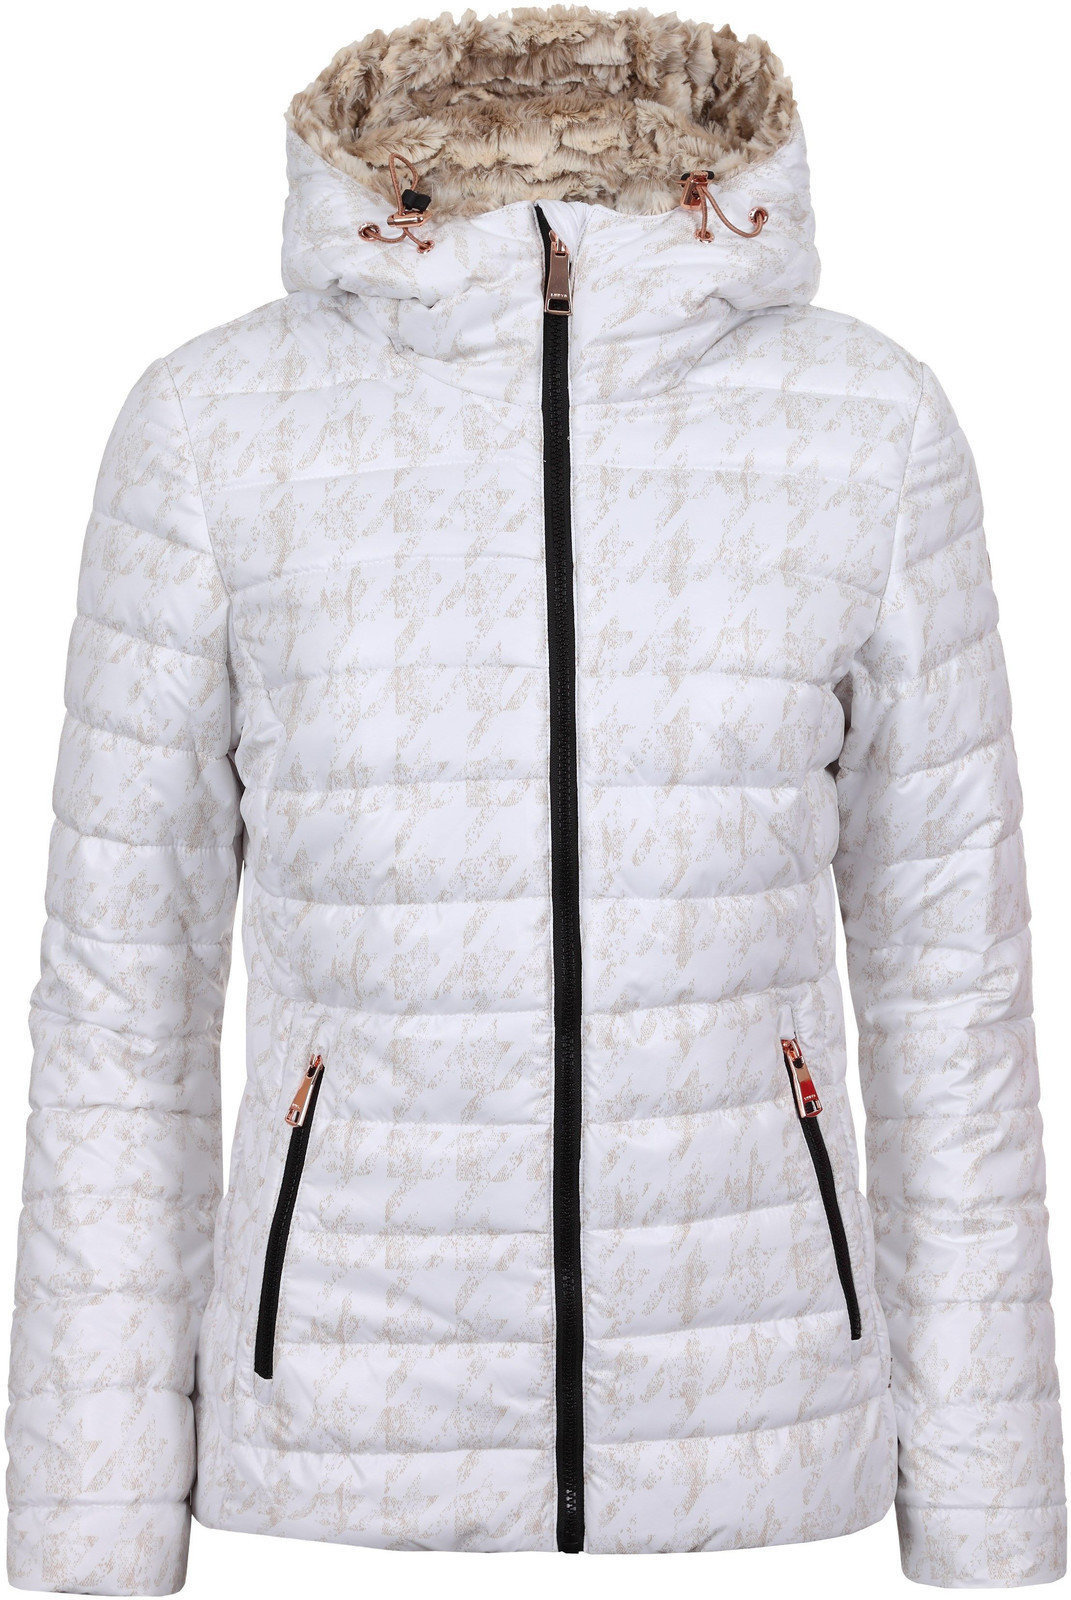 Skijaška jakna Luhta Bettina Optic White 40